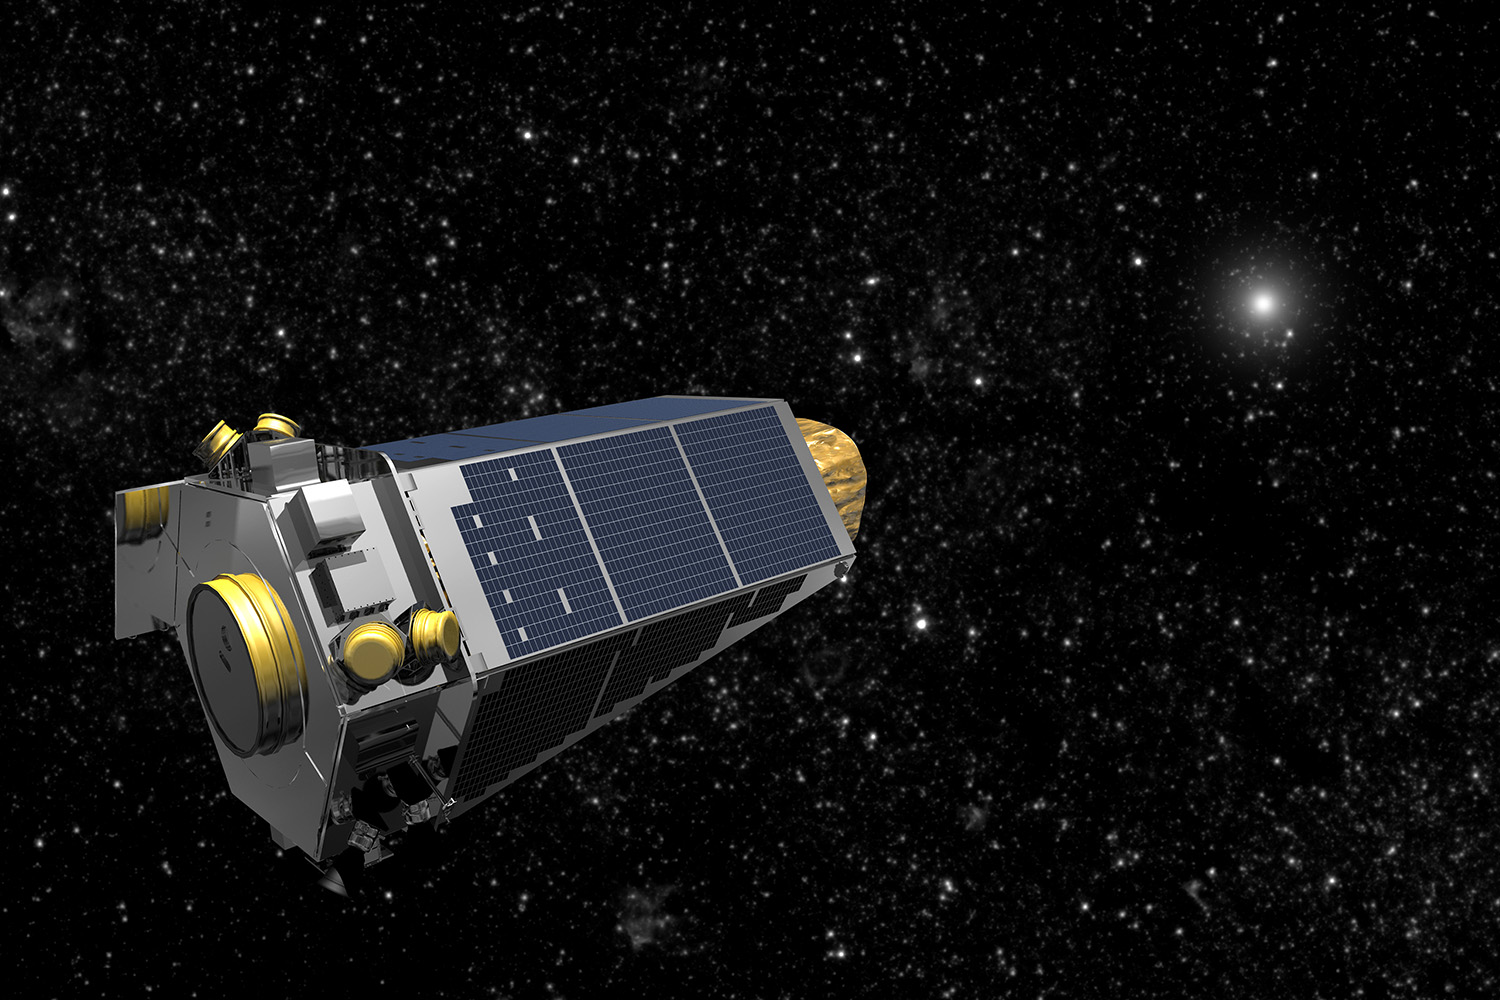 La NASA recupera contacto con el telescopio espacial Kepler tras varios días en ‘modo de emergencia’